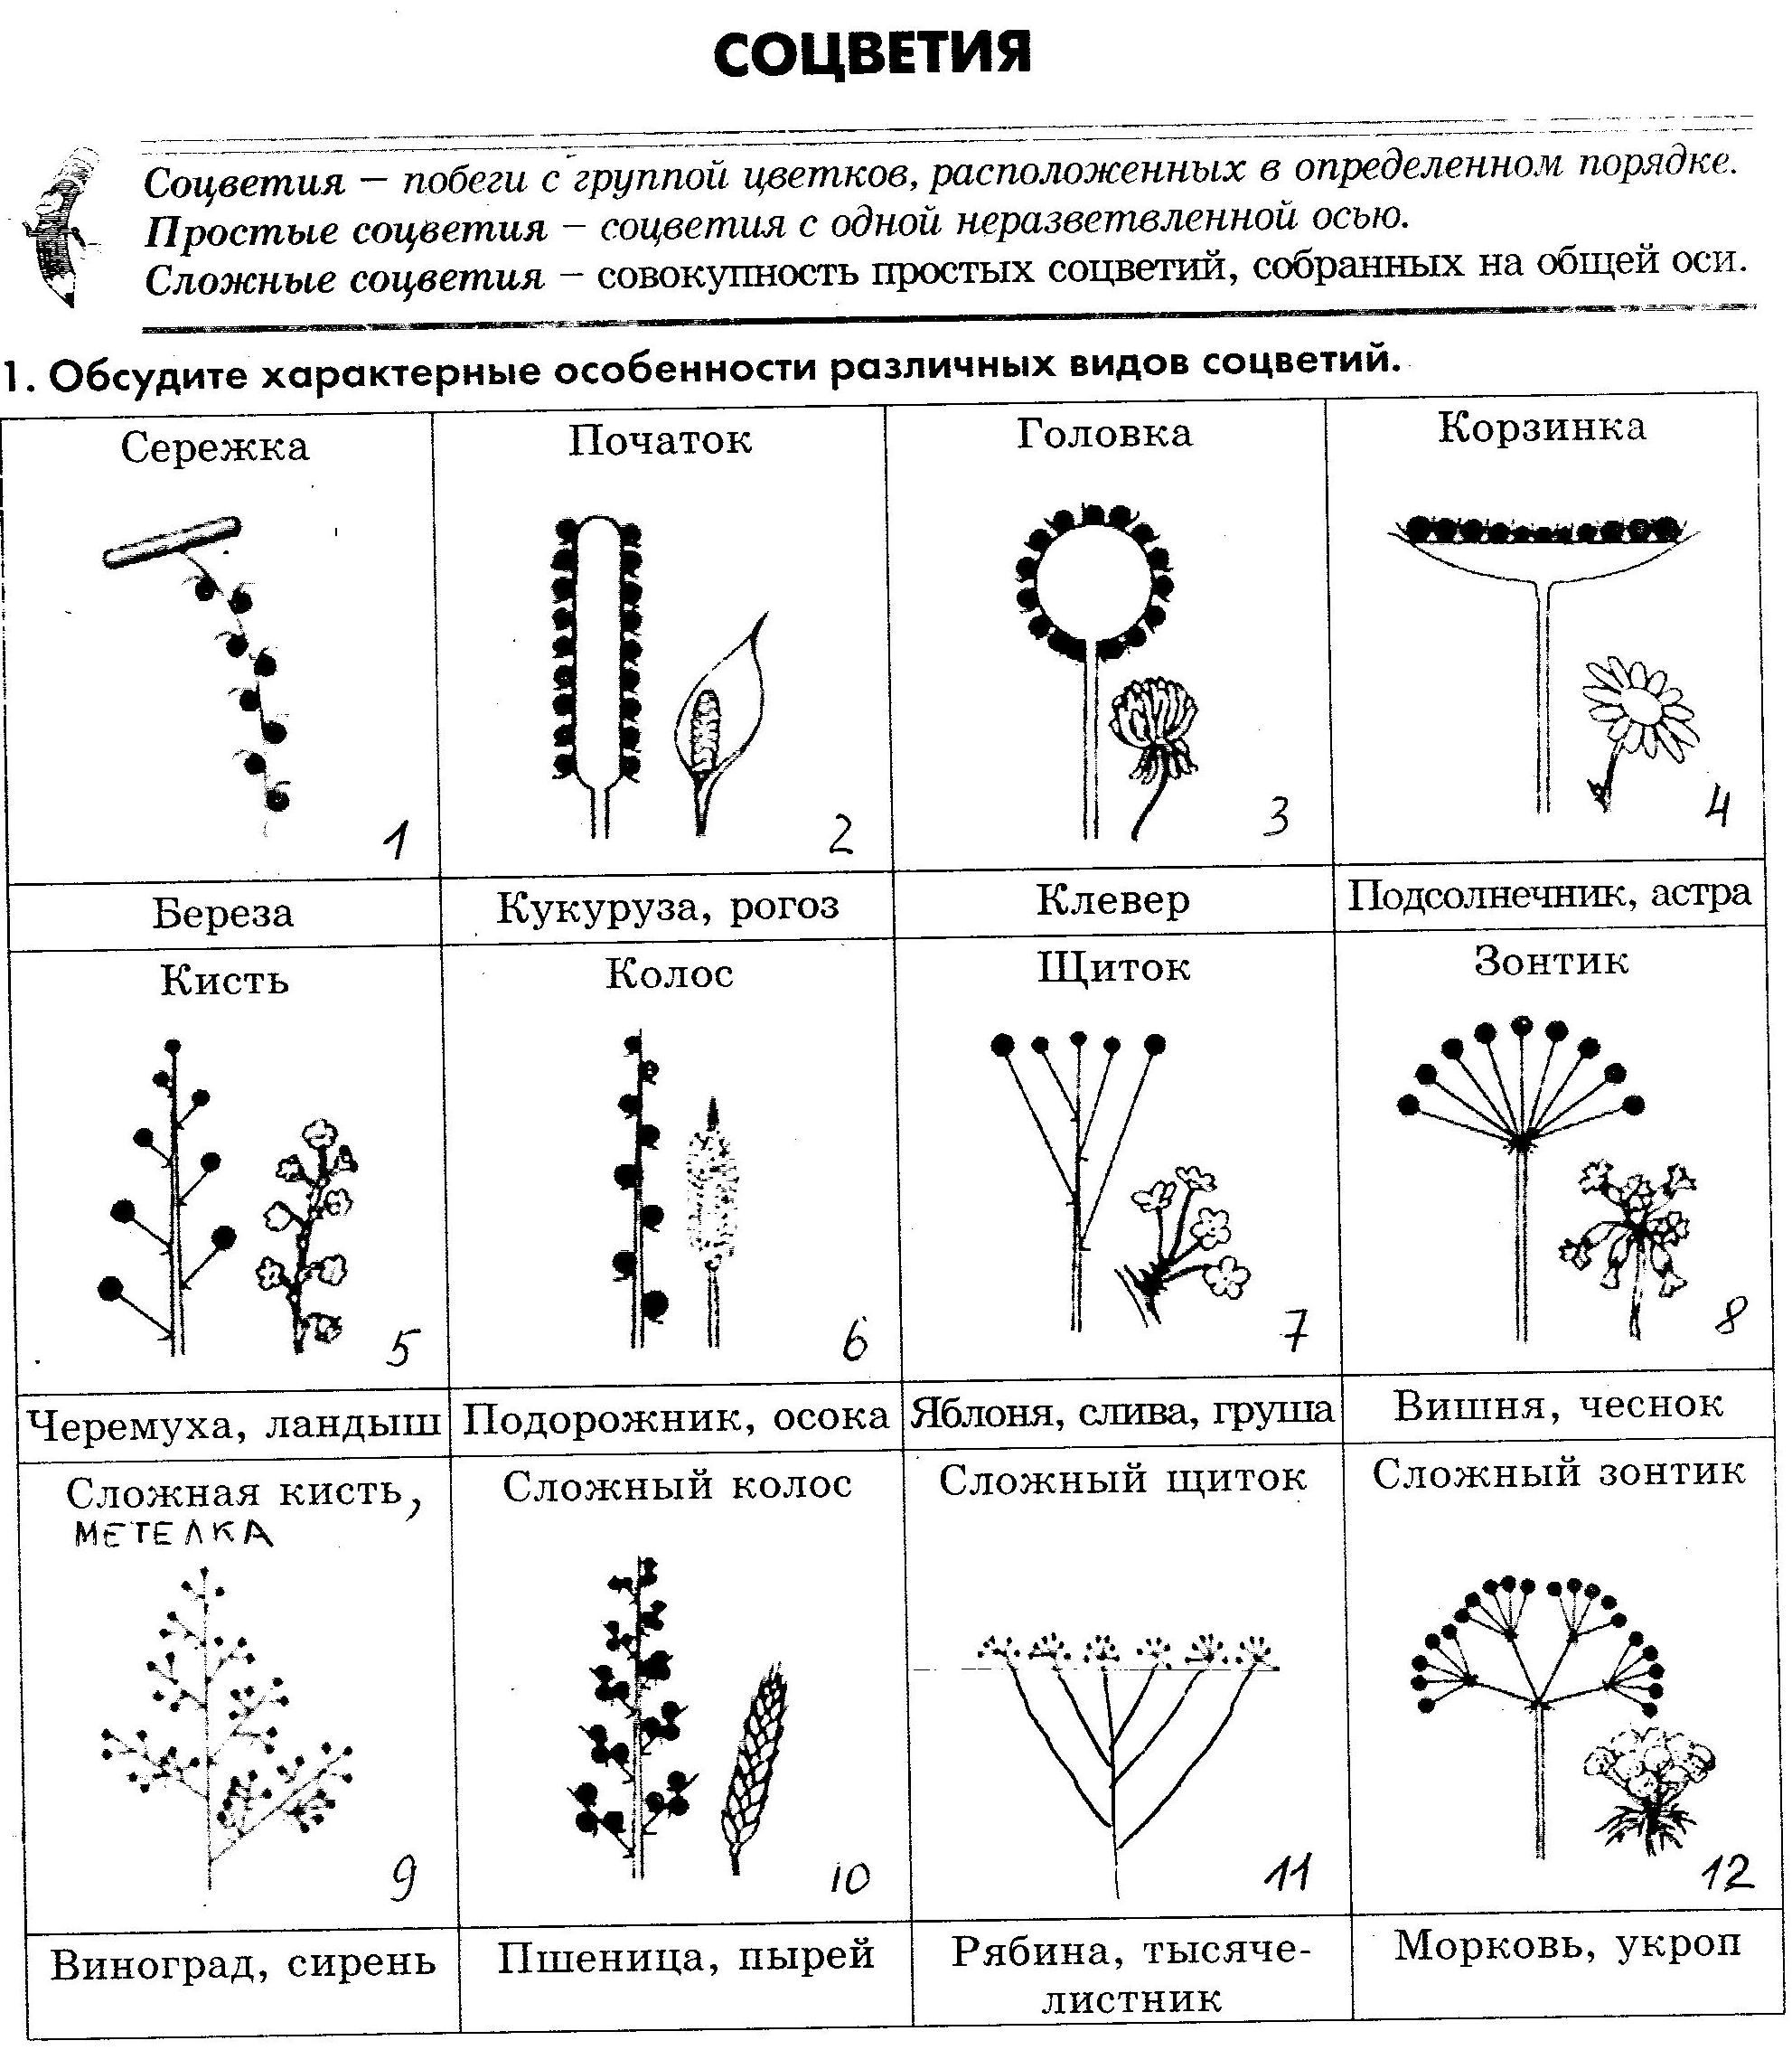 Простые цветки биология. Таблица название соцветия схема. Схема 10 соцветий. Типы соцветий таблица соцветие схема растения. Схема классификации соцветий цветковых растений.